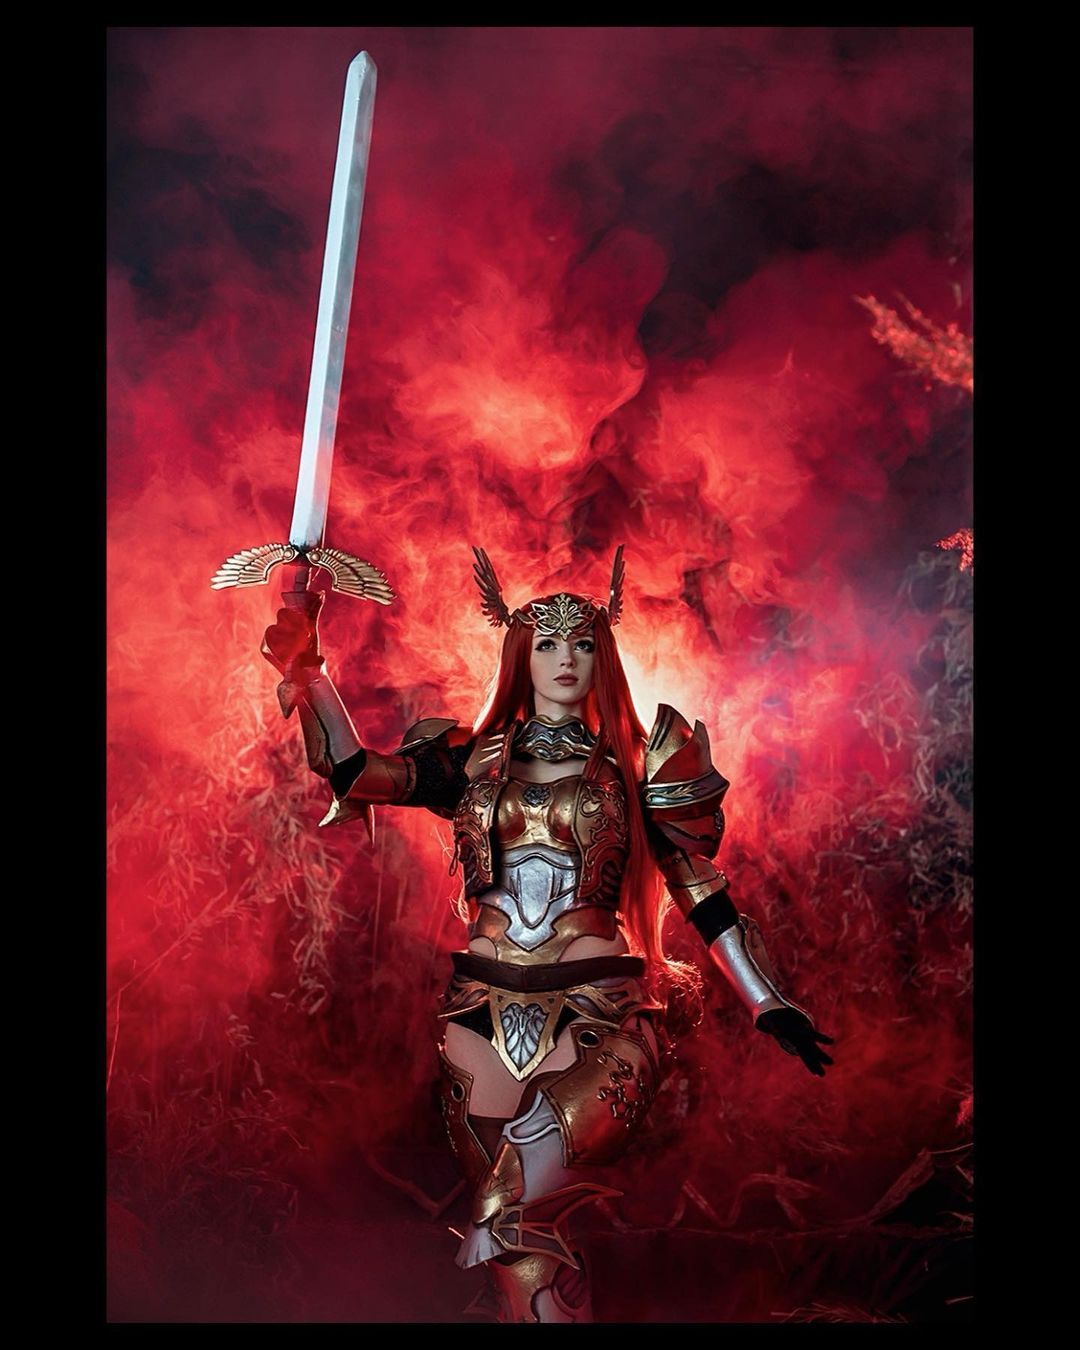 Косплей на персонажа Lineage II в сете ИК (Imperial Crusader Set). Косплеер: Мария Lady Melamory Давыдова.